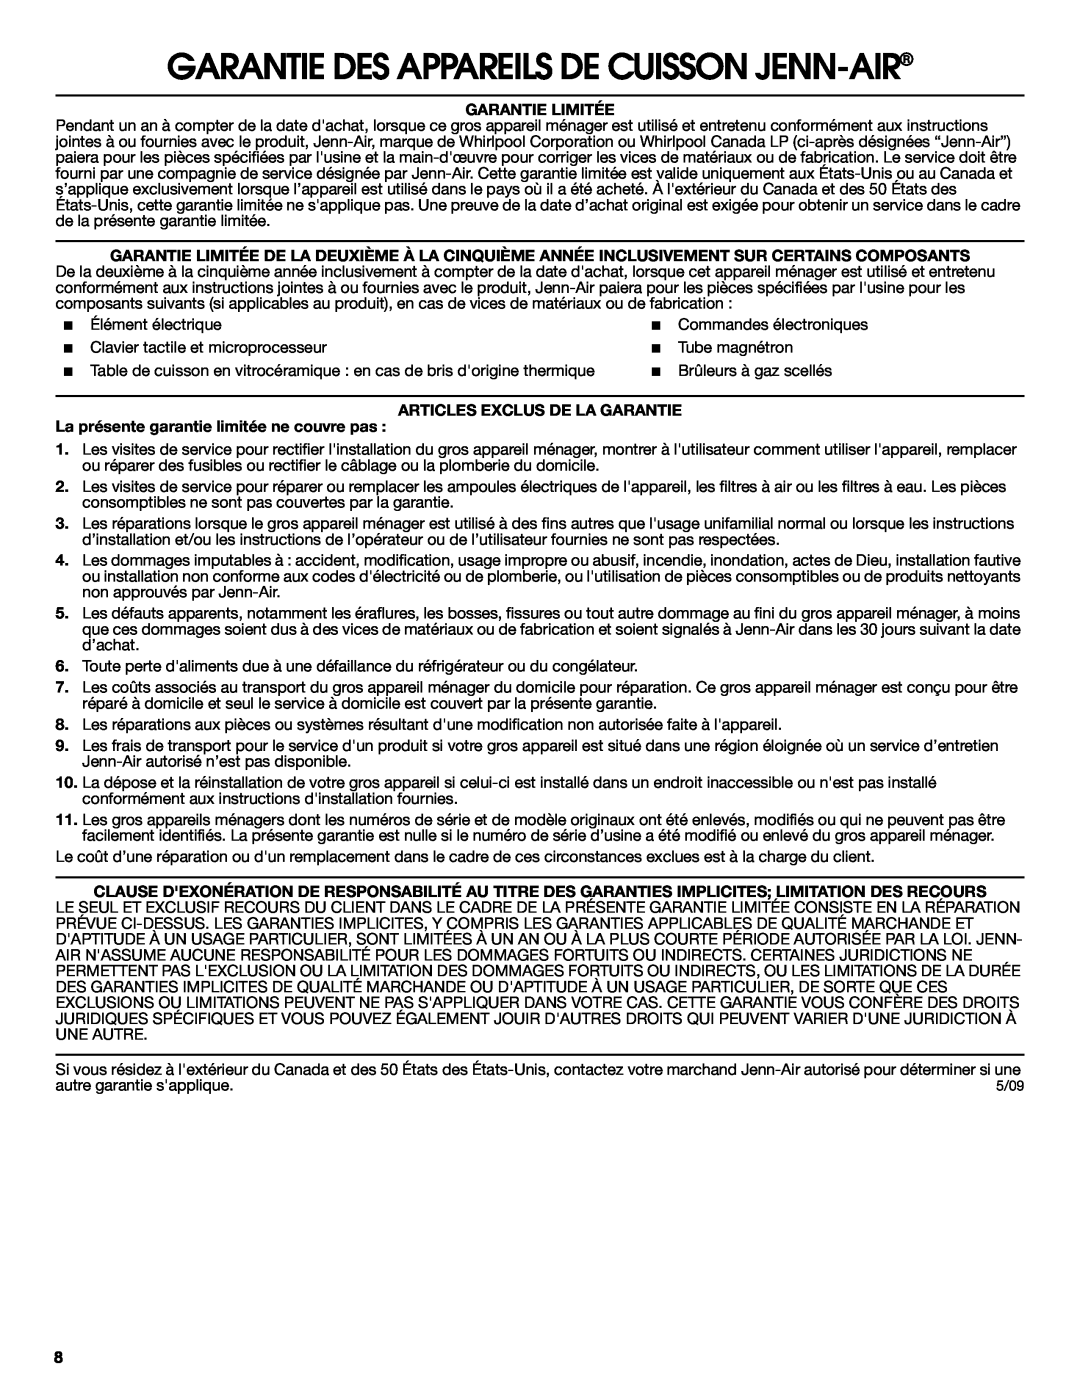 Jenn-Air W10259841B Garantie Des Appareils De Cuisson Jenn-Air, Garantie Limitée, Articles Exclus De La Garantie 